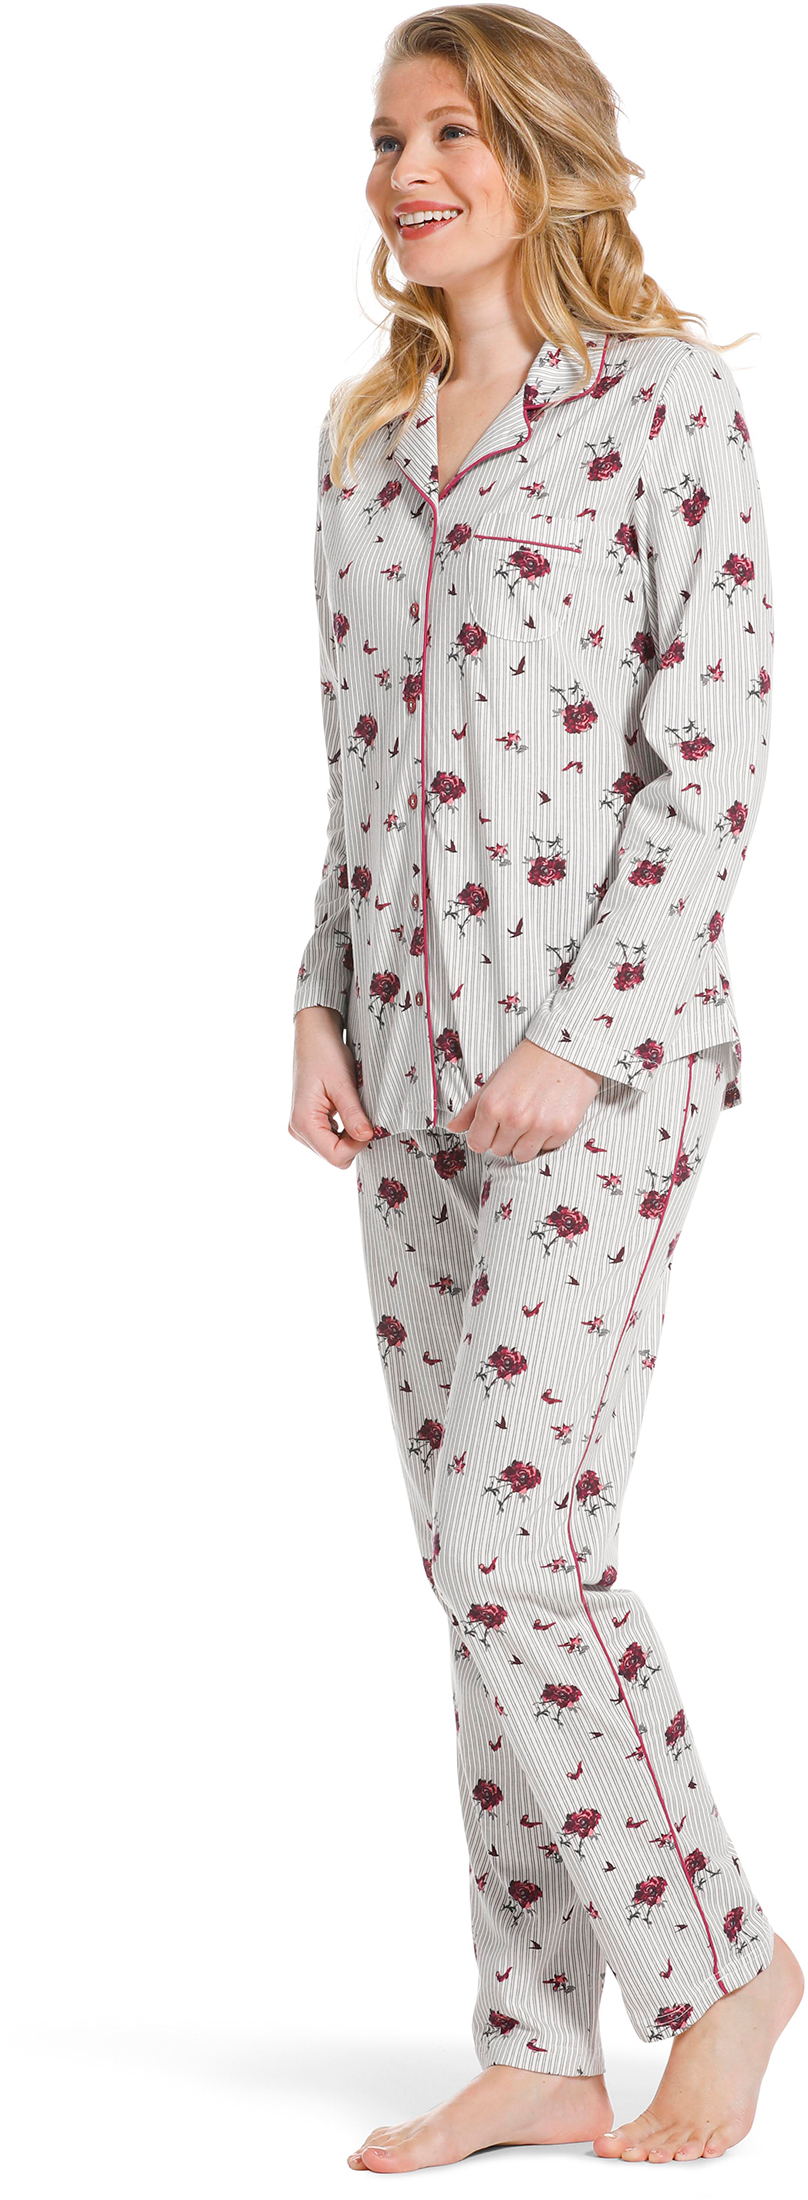 Pastunette doorknoop dames pyjama 20222 156 6 38